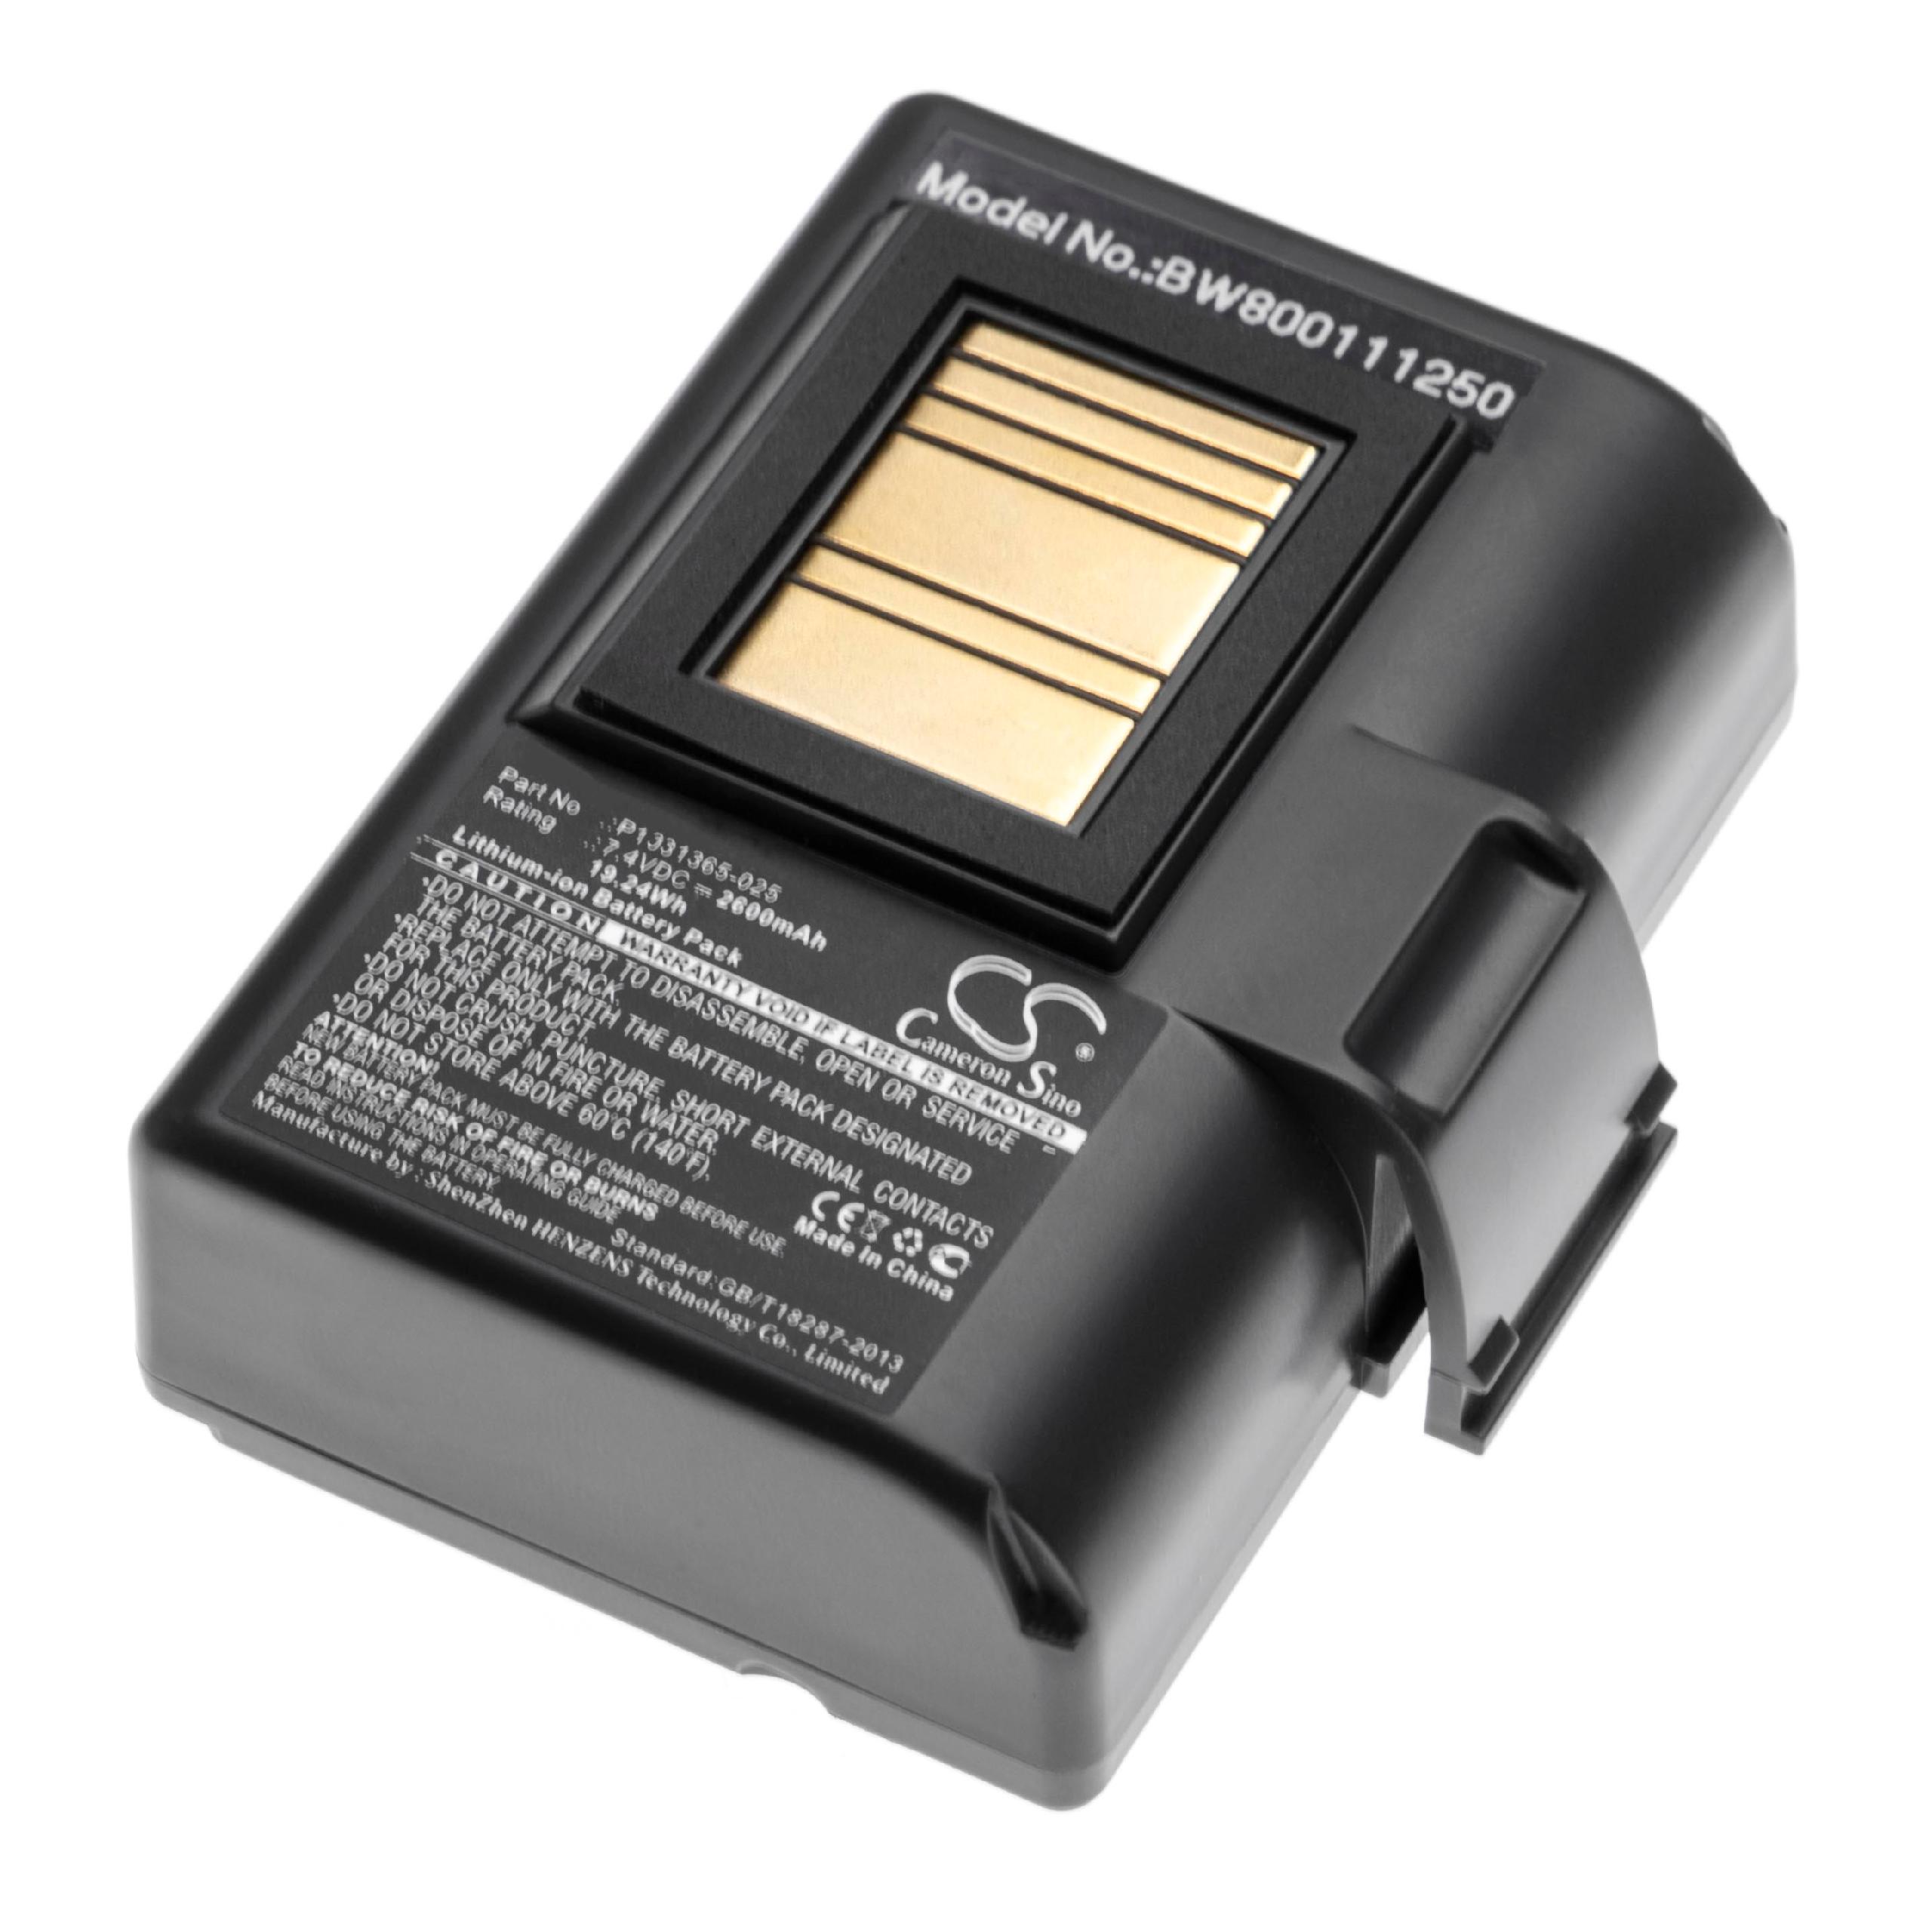 Akumulator do drukarki / drukarki etykiet zamiennik Zebra AT16004, BTRY-MPP-34MA1-01 - 2600 mAh 7,4 V Li-Ion